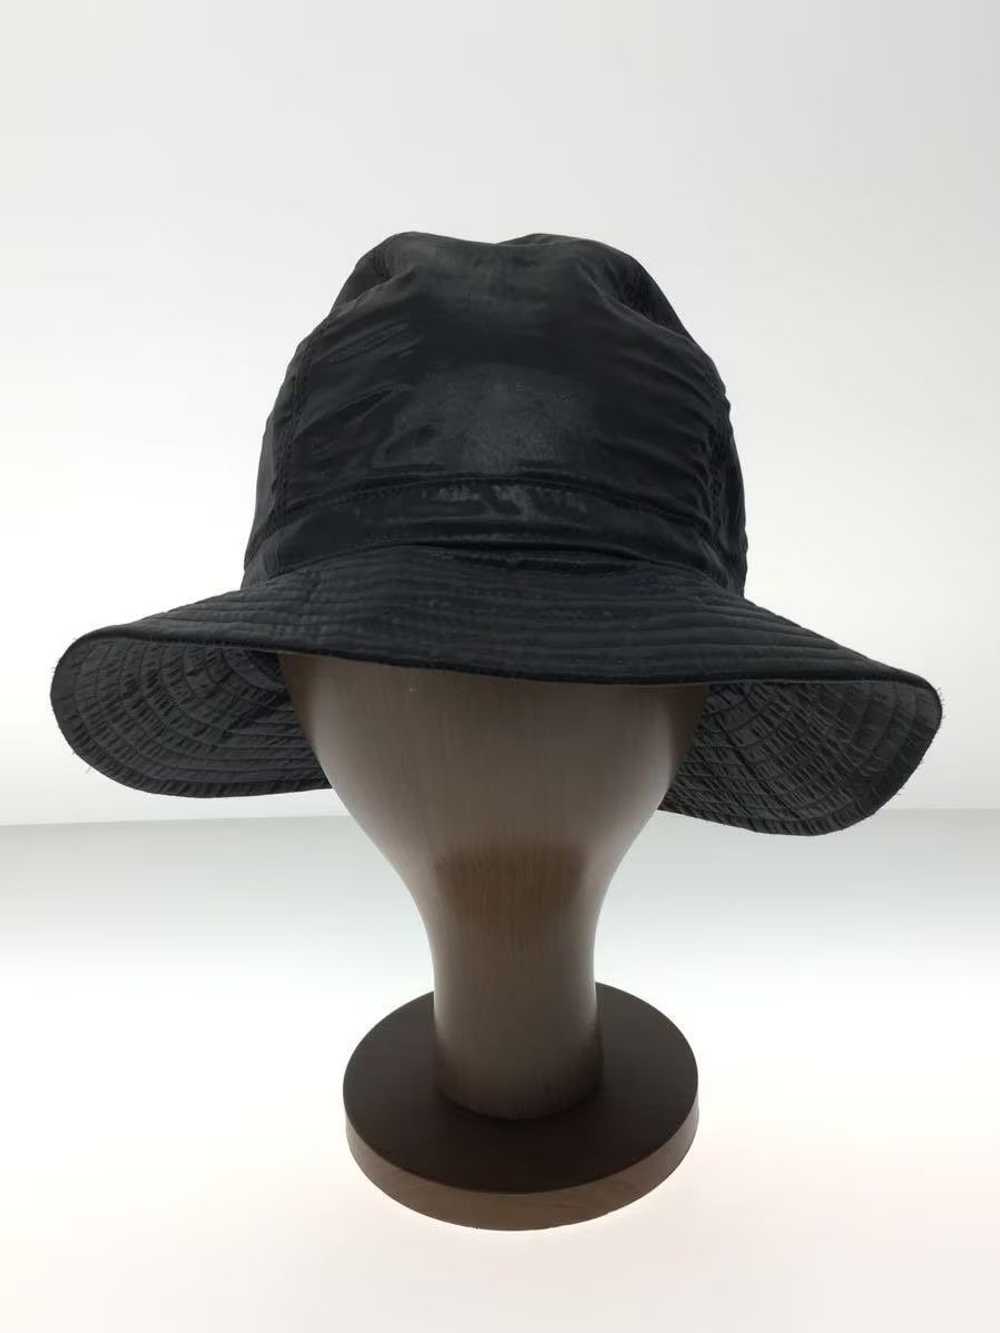 Yohji Yamamoto Pour Homme Shiny Bucket Hat - image 1